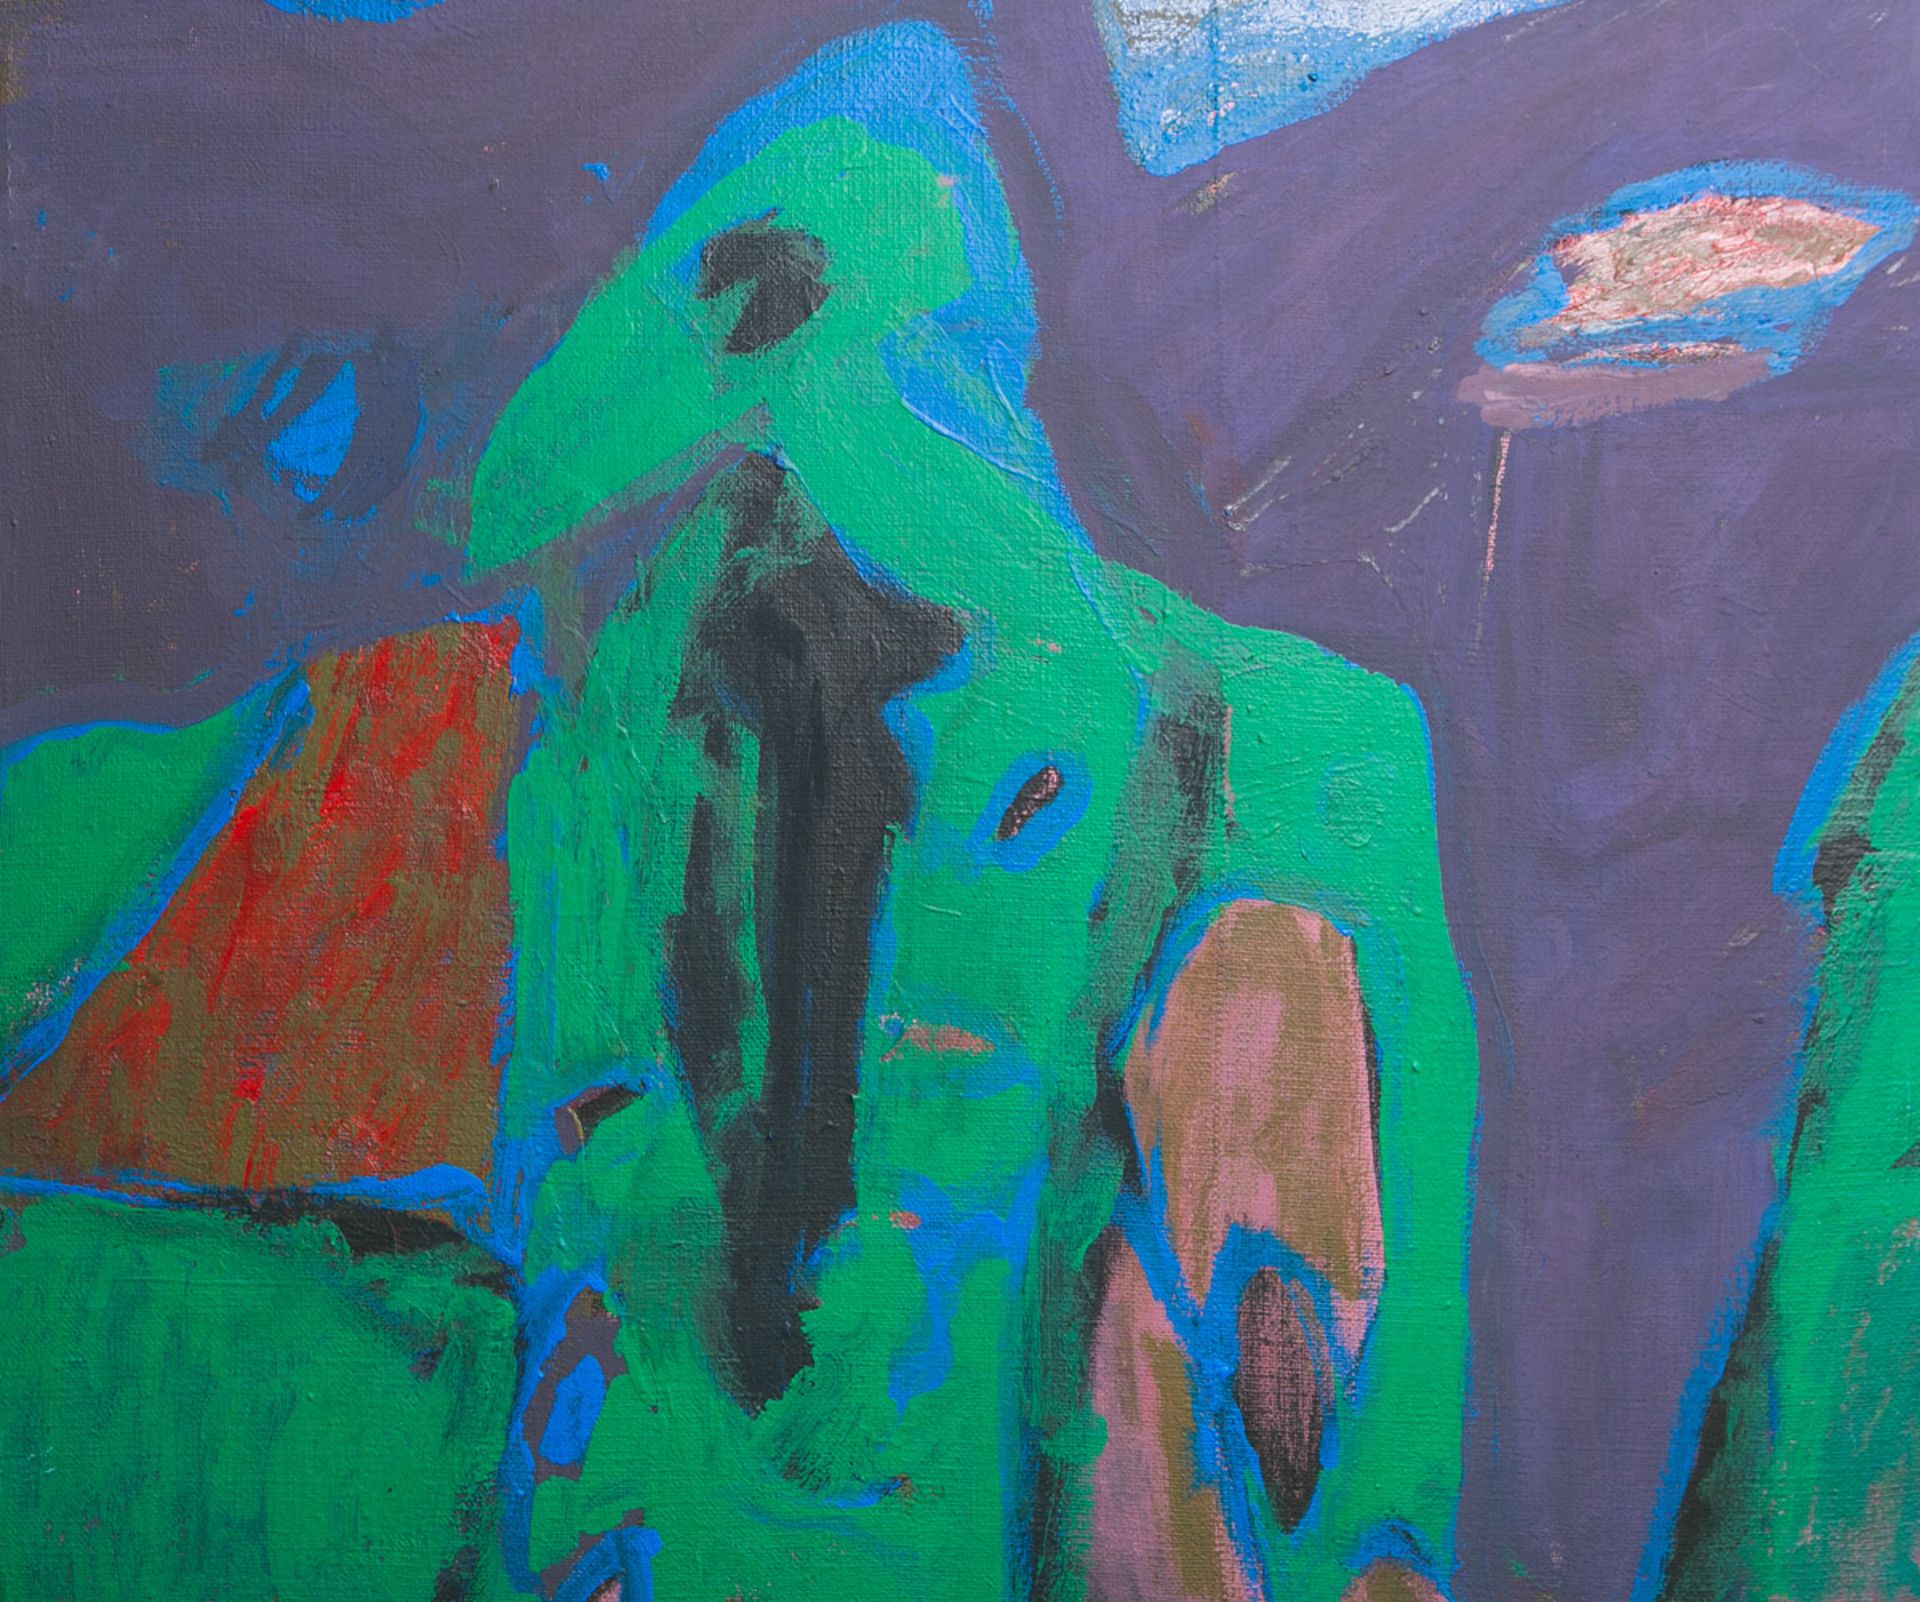 Hess, Reinhard (1904 - 1998), "Grüner Vogel" (1989)